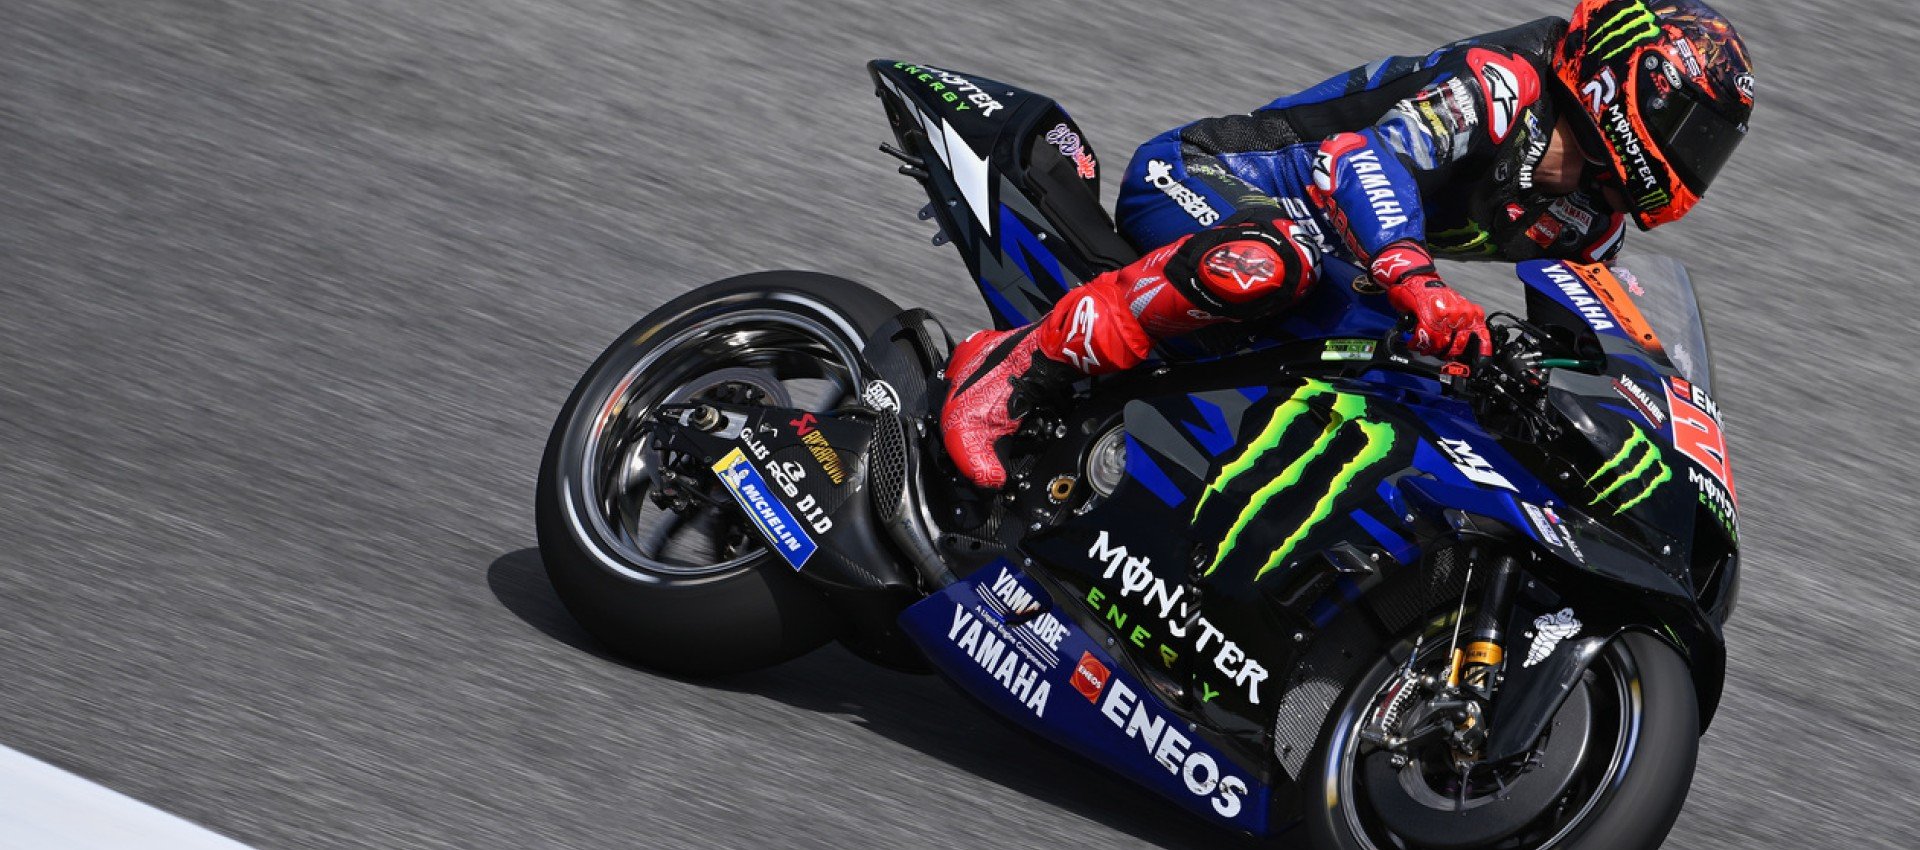 Monster Energy Yamaha MotoGPのドライバーたちがムジェロでP10とP11を達成。